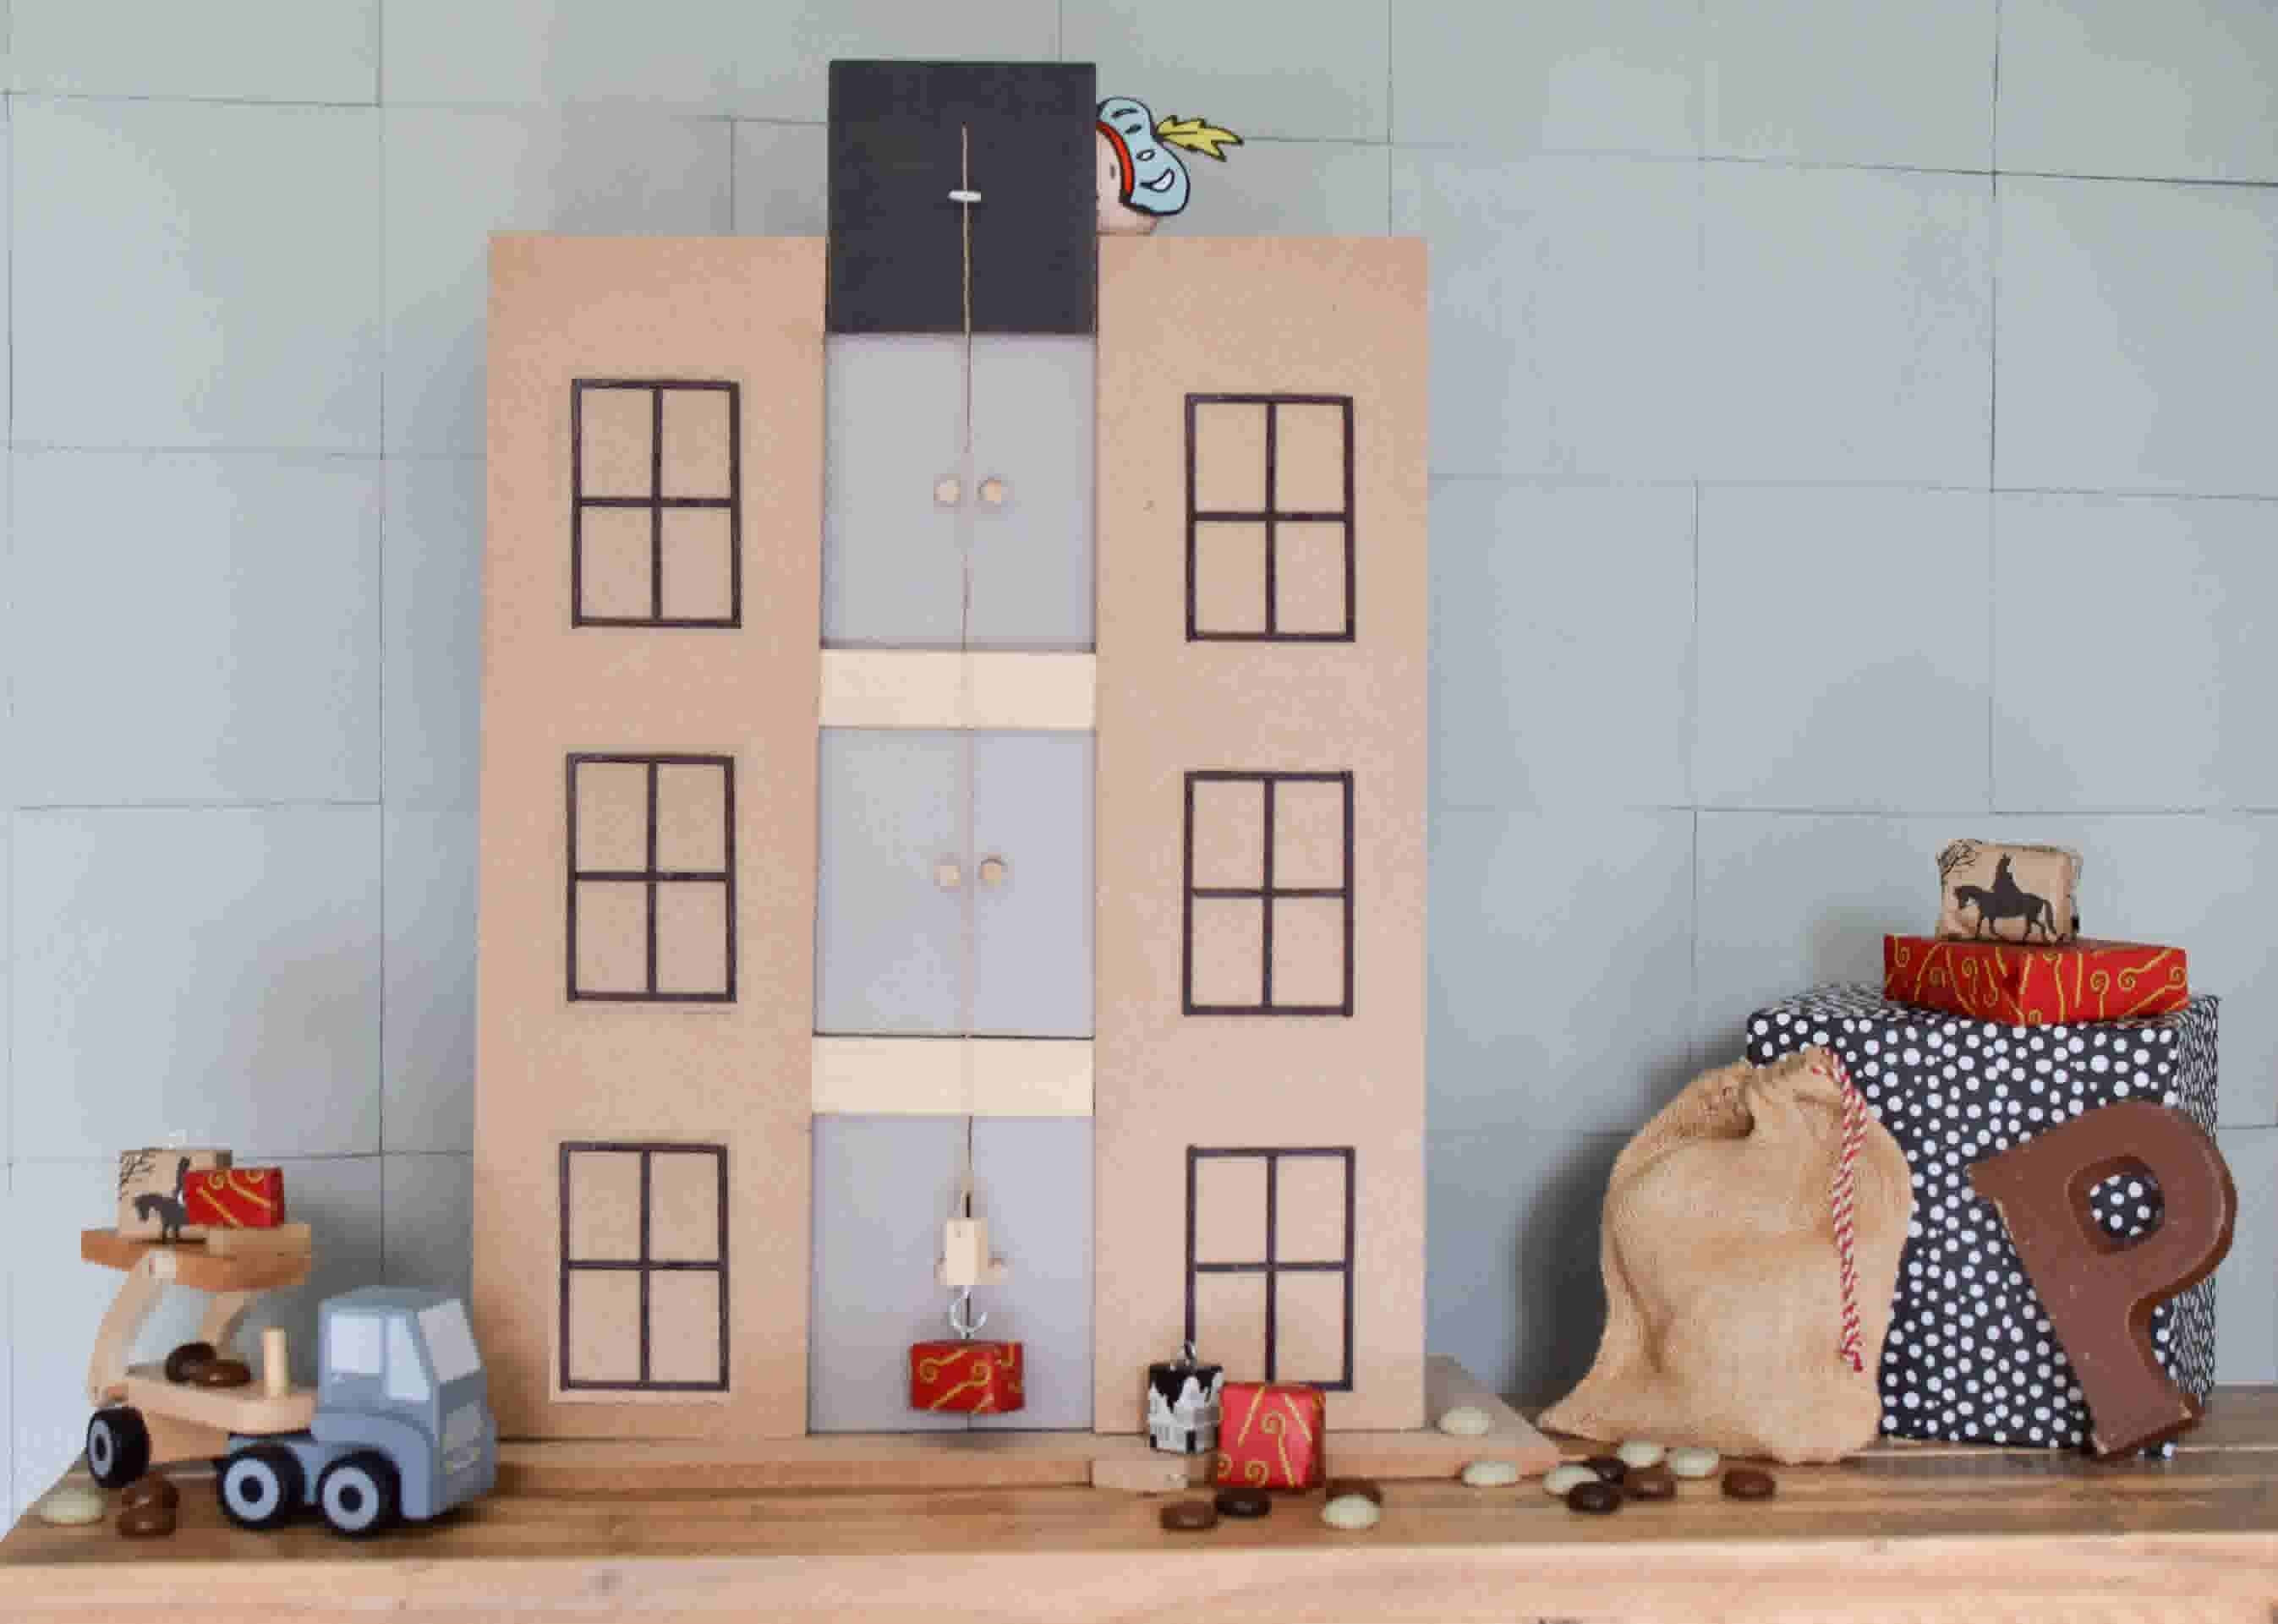 Cilia Kust linnen Sinterklaas idee: een pakhuis van hout maken | Karwei